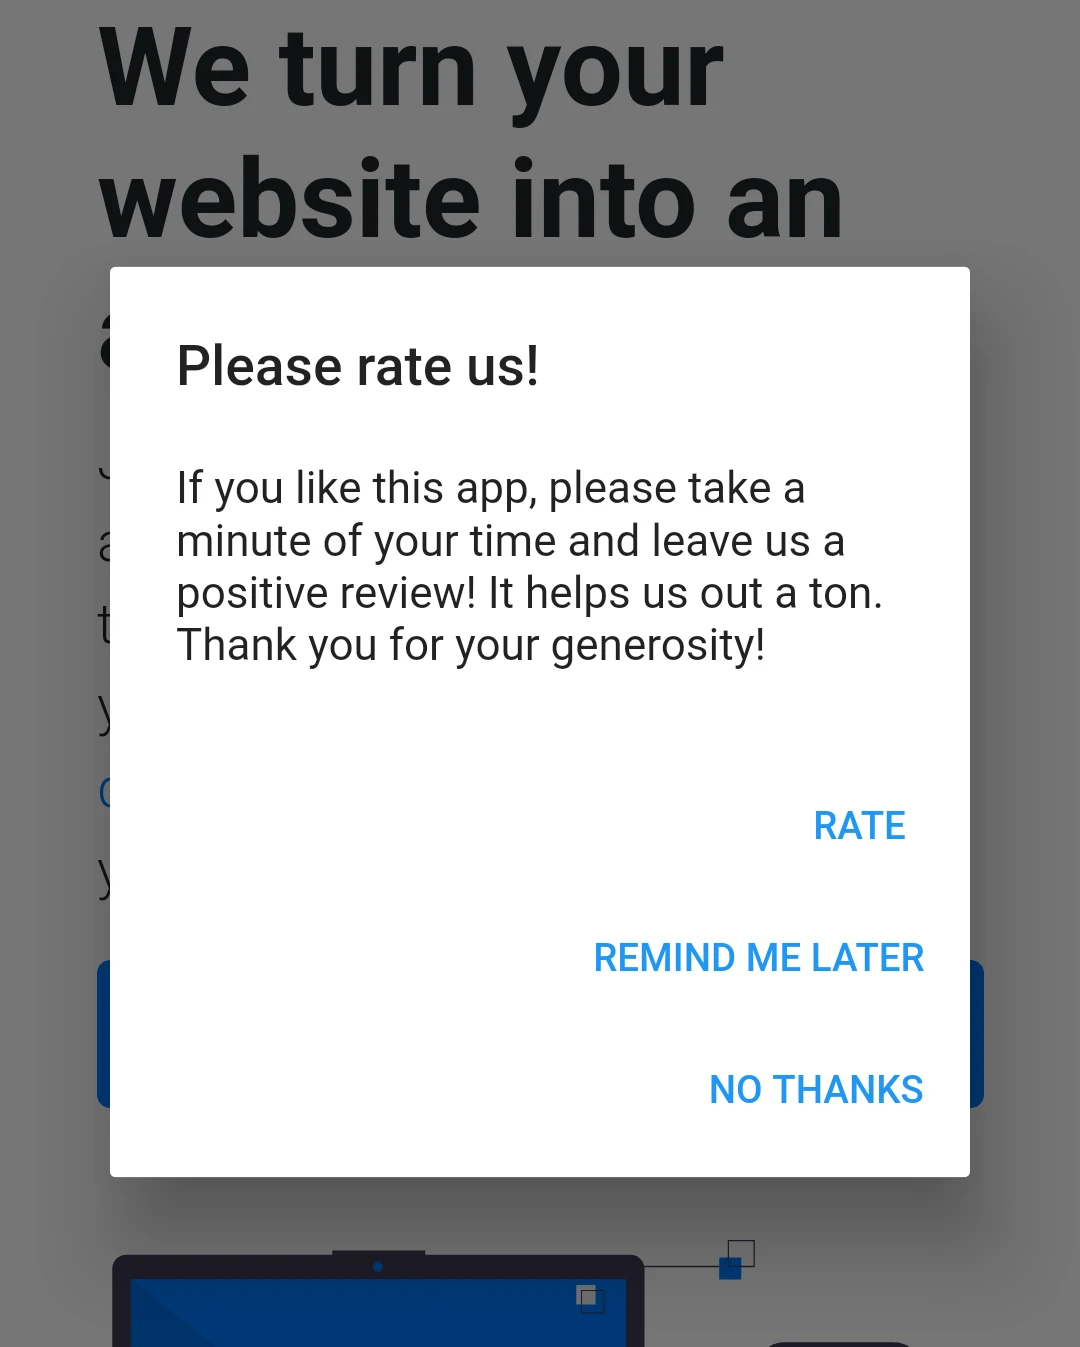 Een Android pop-up bericht vraagt de gebruiker om een beoordeling achter te laten. De gebruiker krijgt de 3 knoppen: beoordelen, herinner me later en nooit.